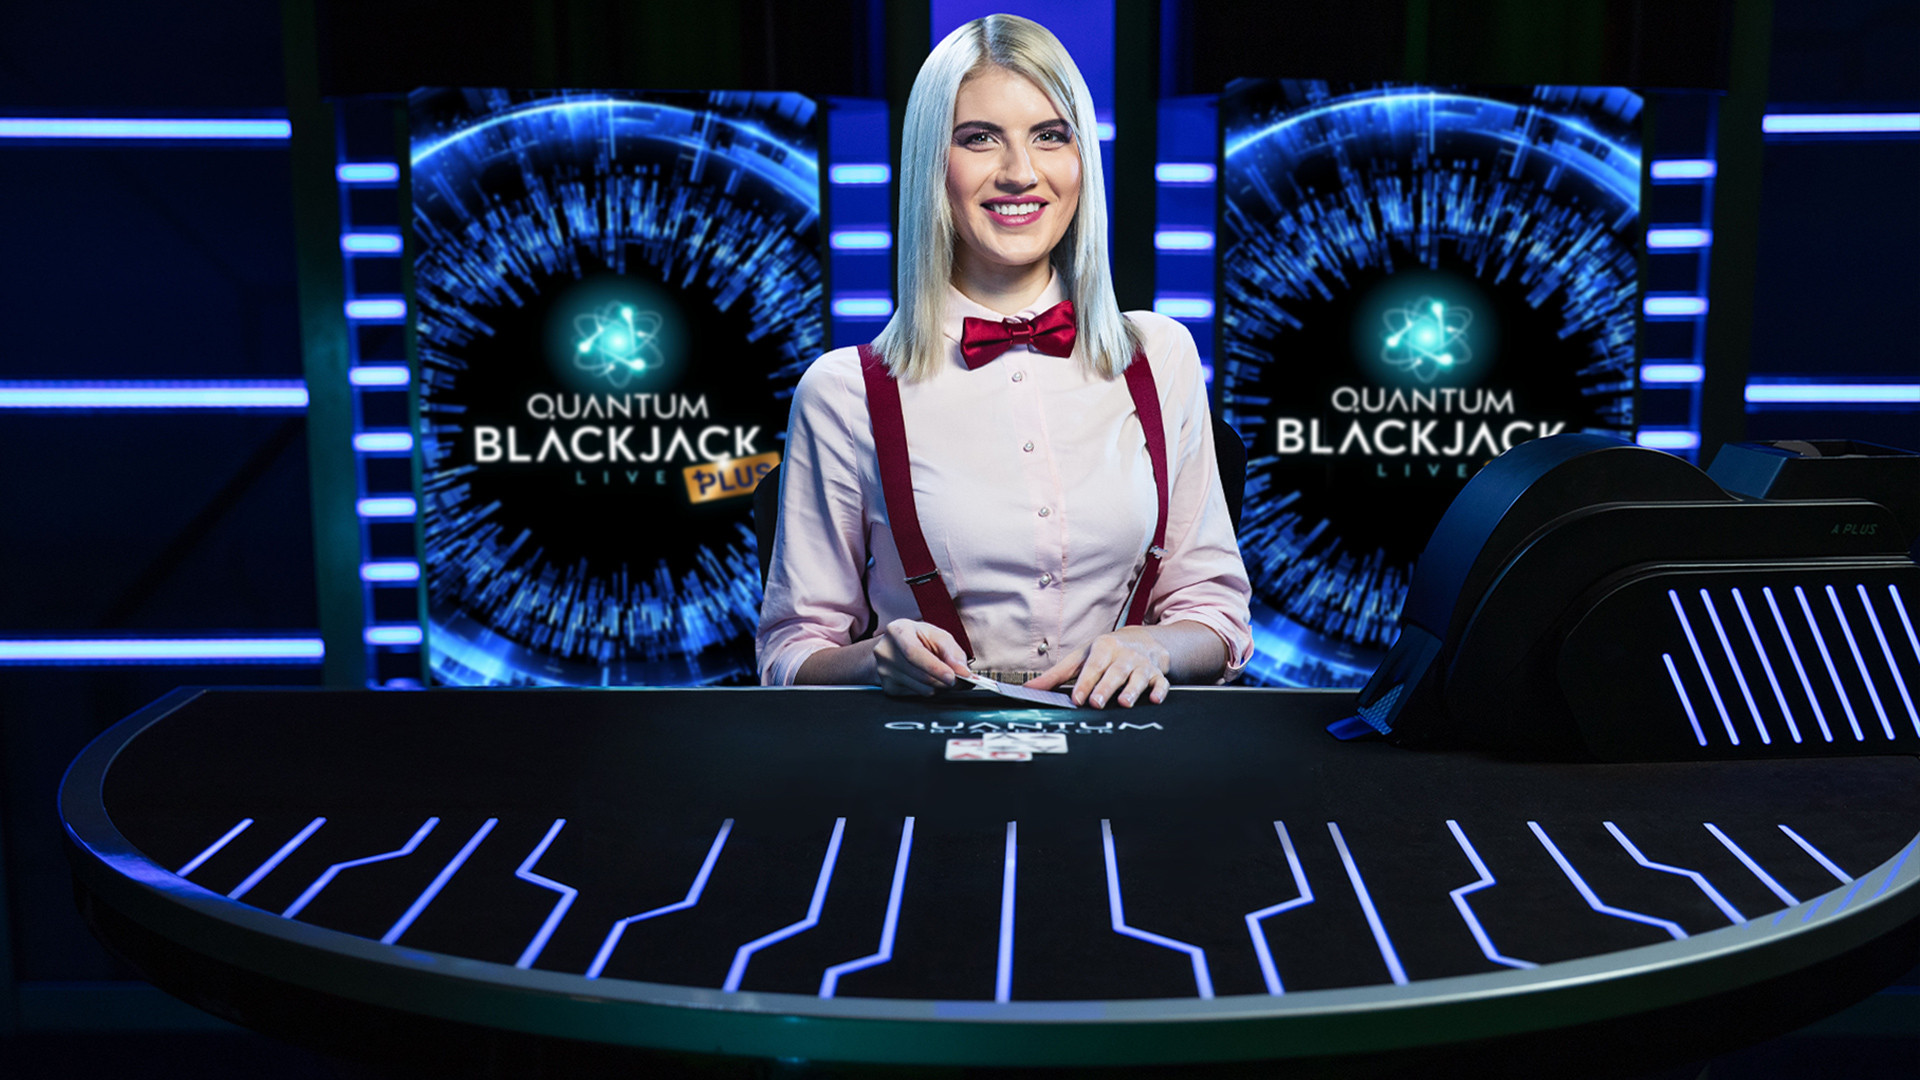 Quantum Blackjack Plus